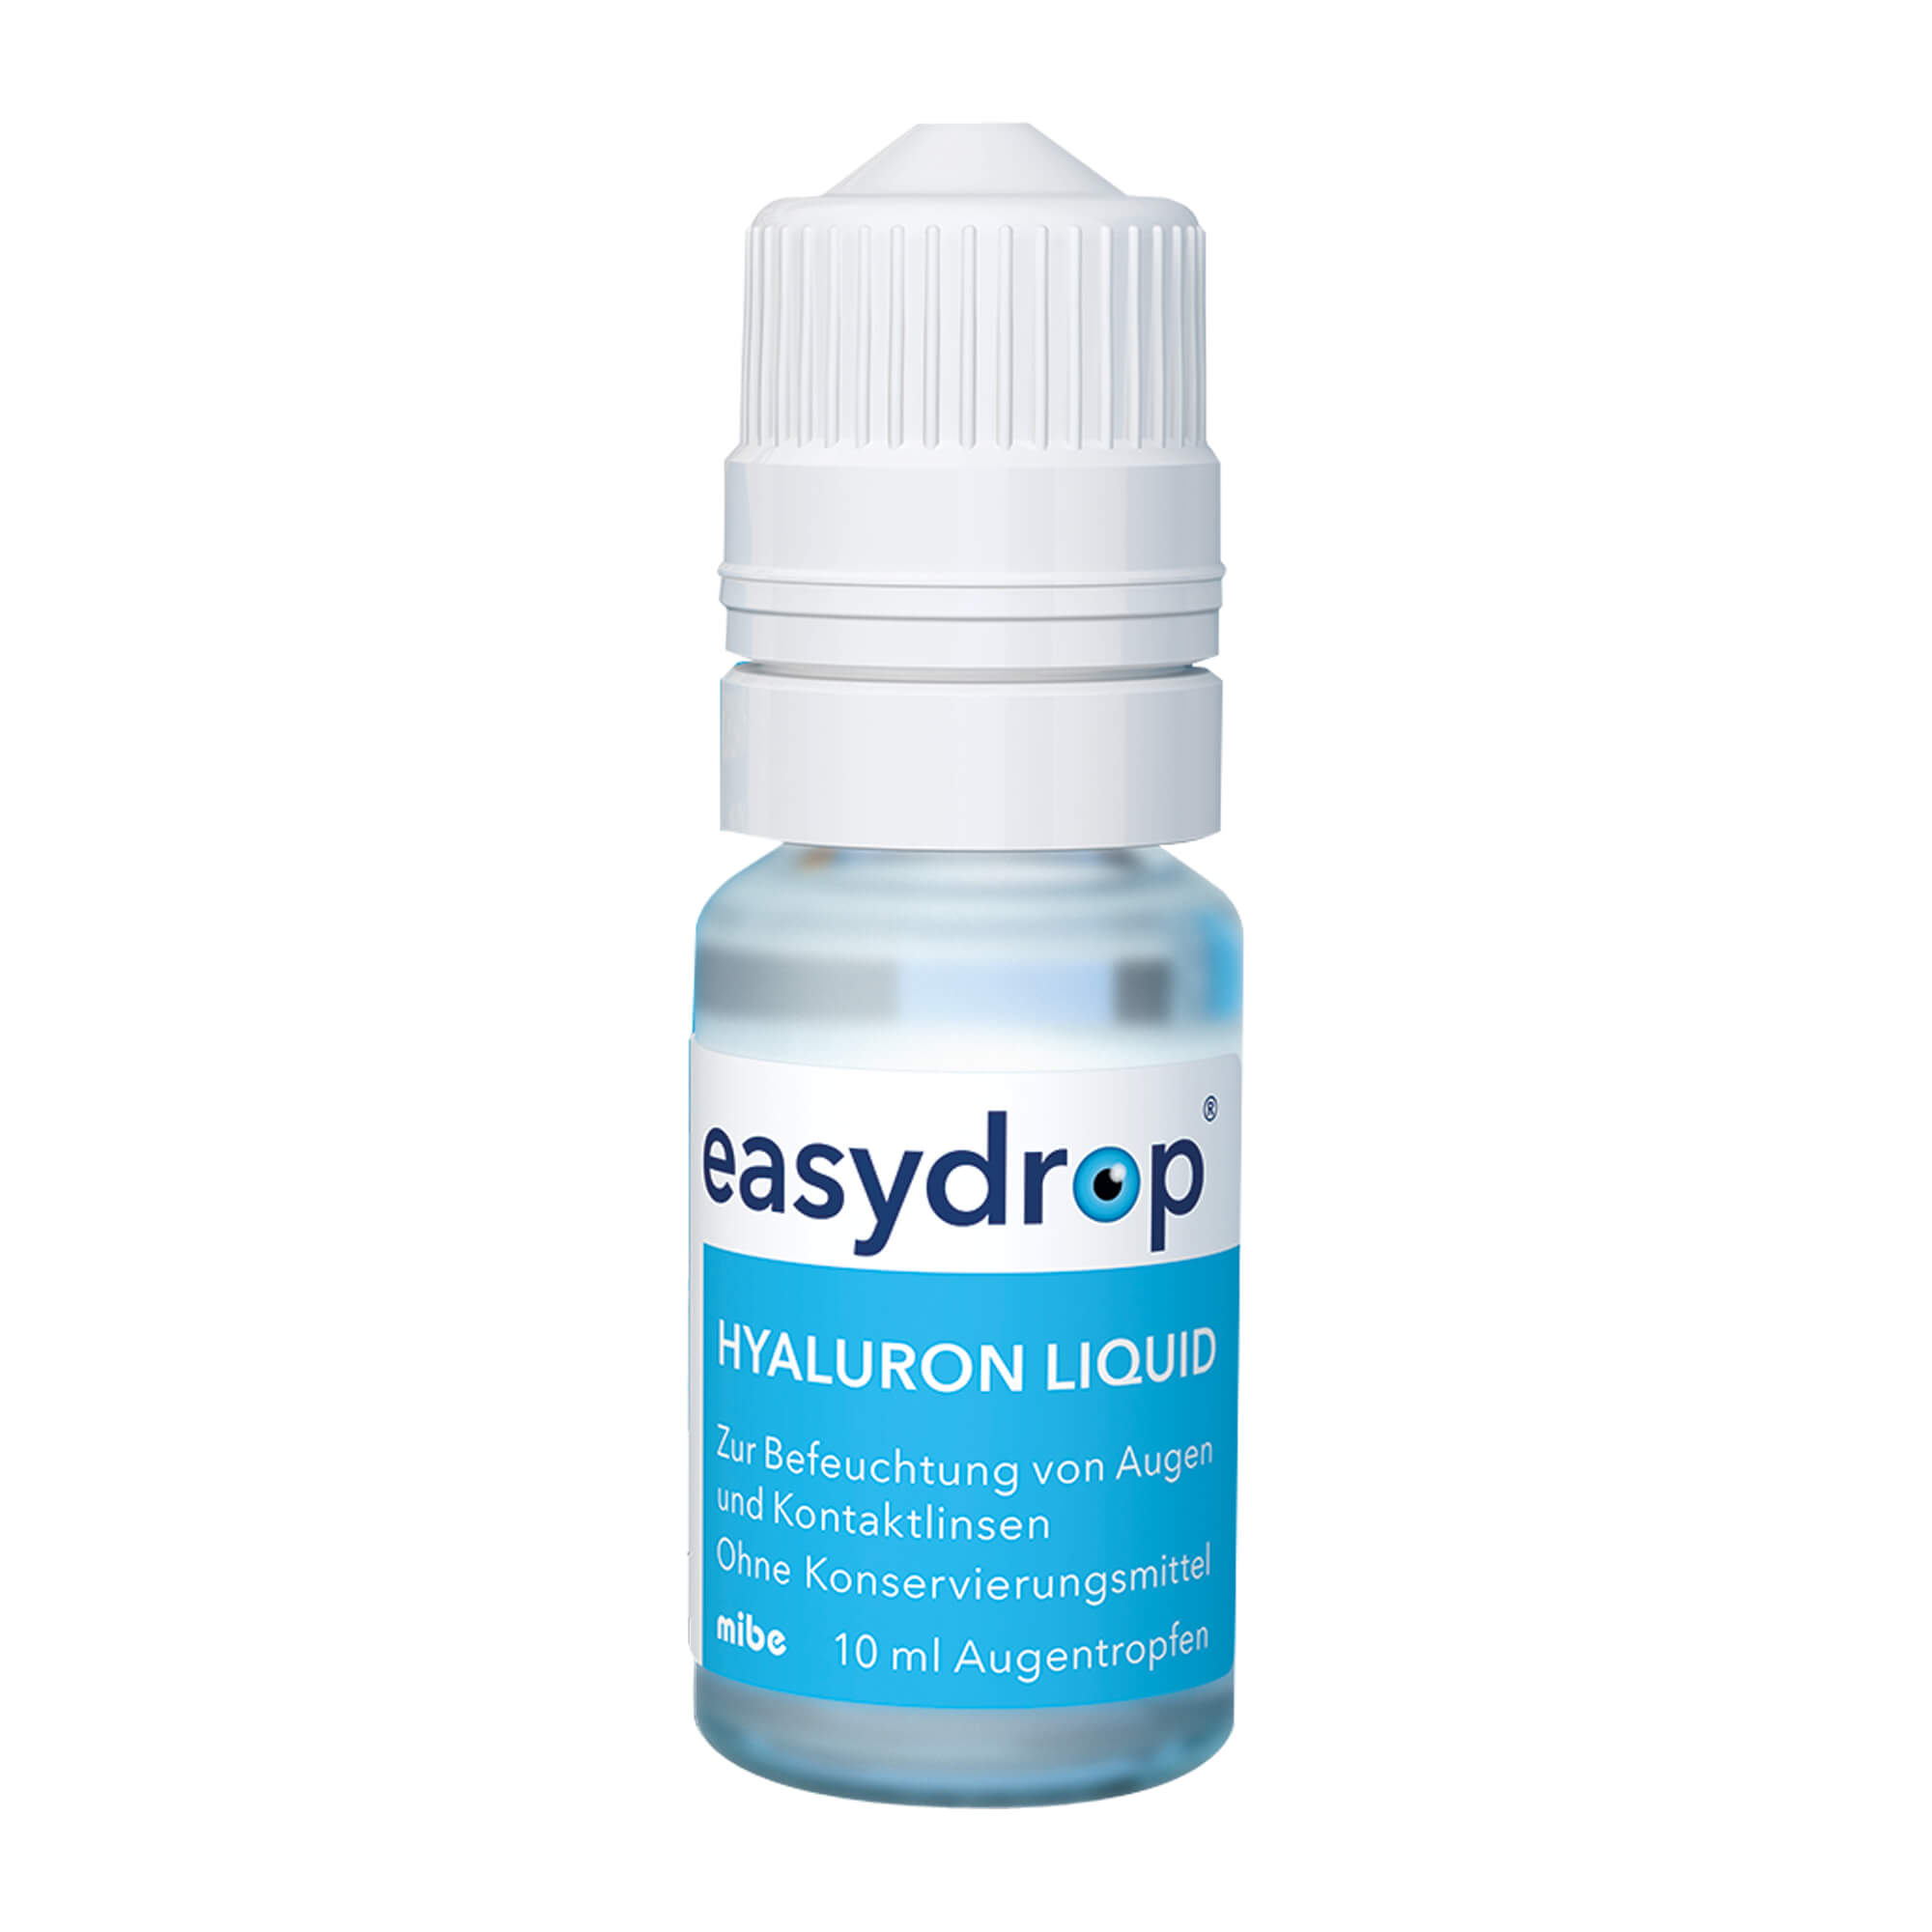 easydrop Hyaluron liquid Augentropfen